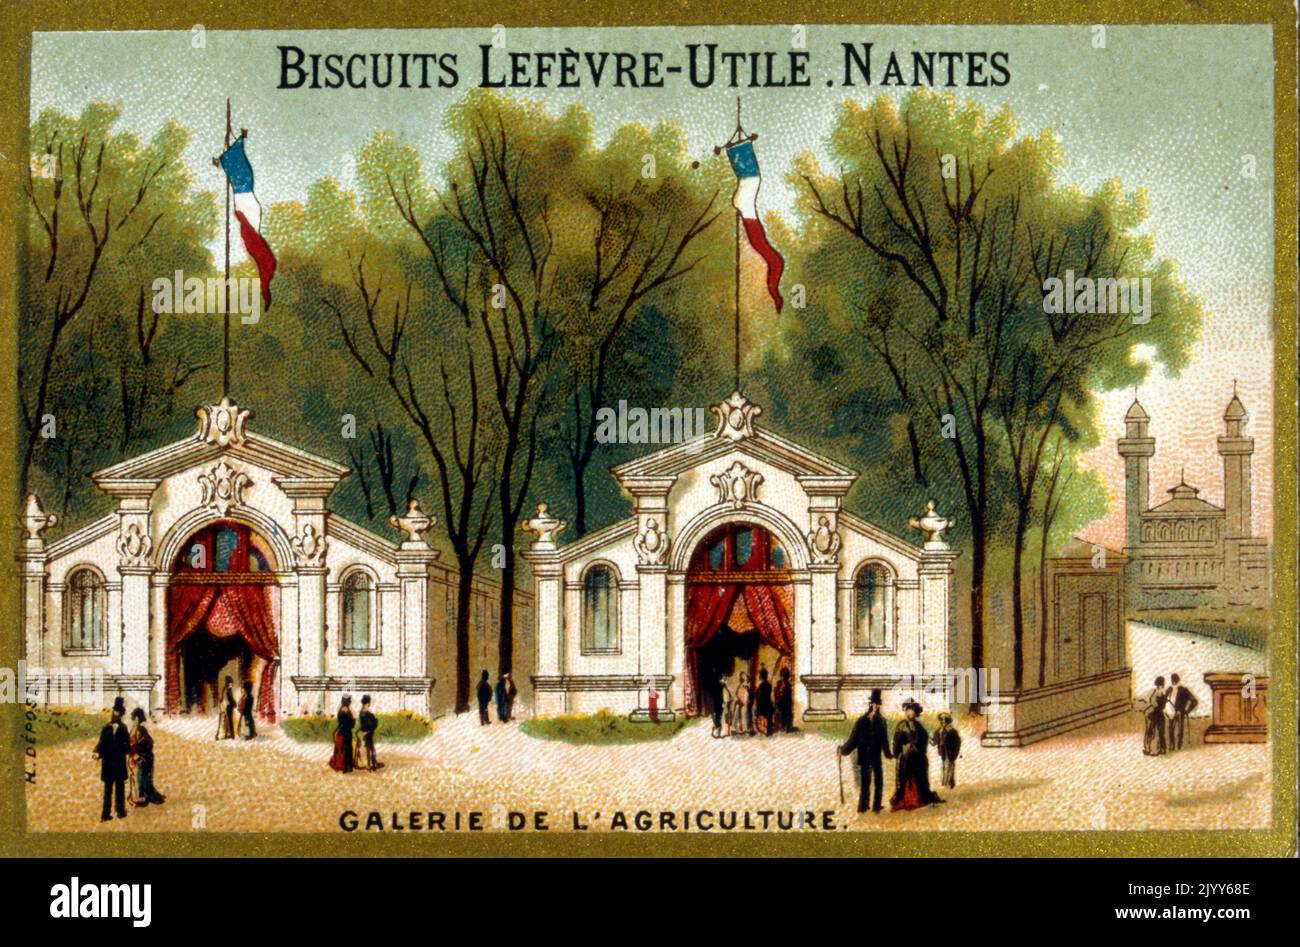 Image de l'usine de biscuits Lefevre-Utile à Nantes; image commémorative de la Galerie de l'agriculture. Banque D'Images